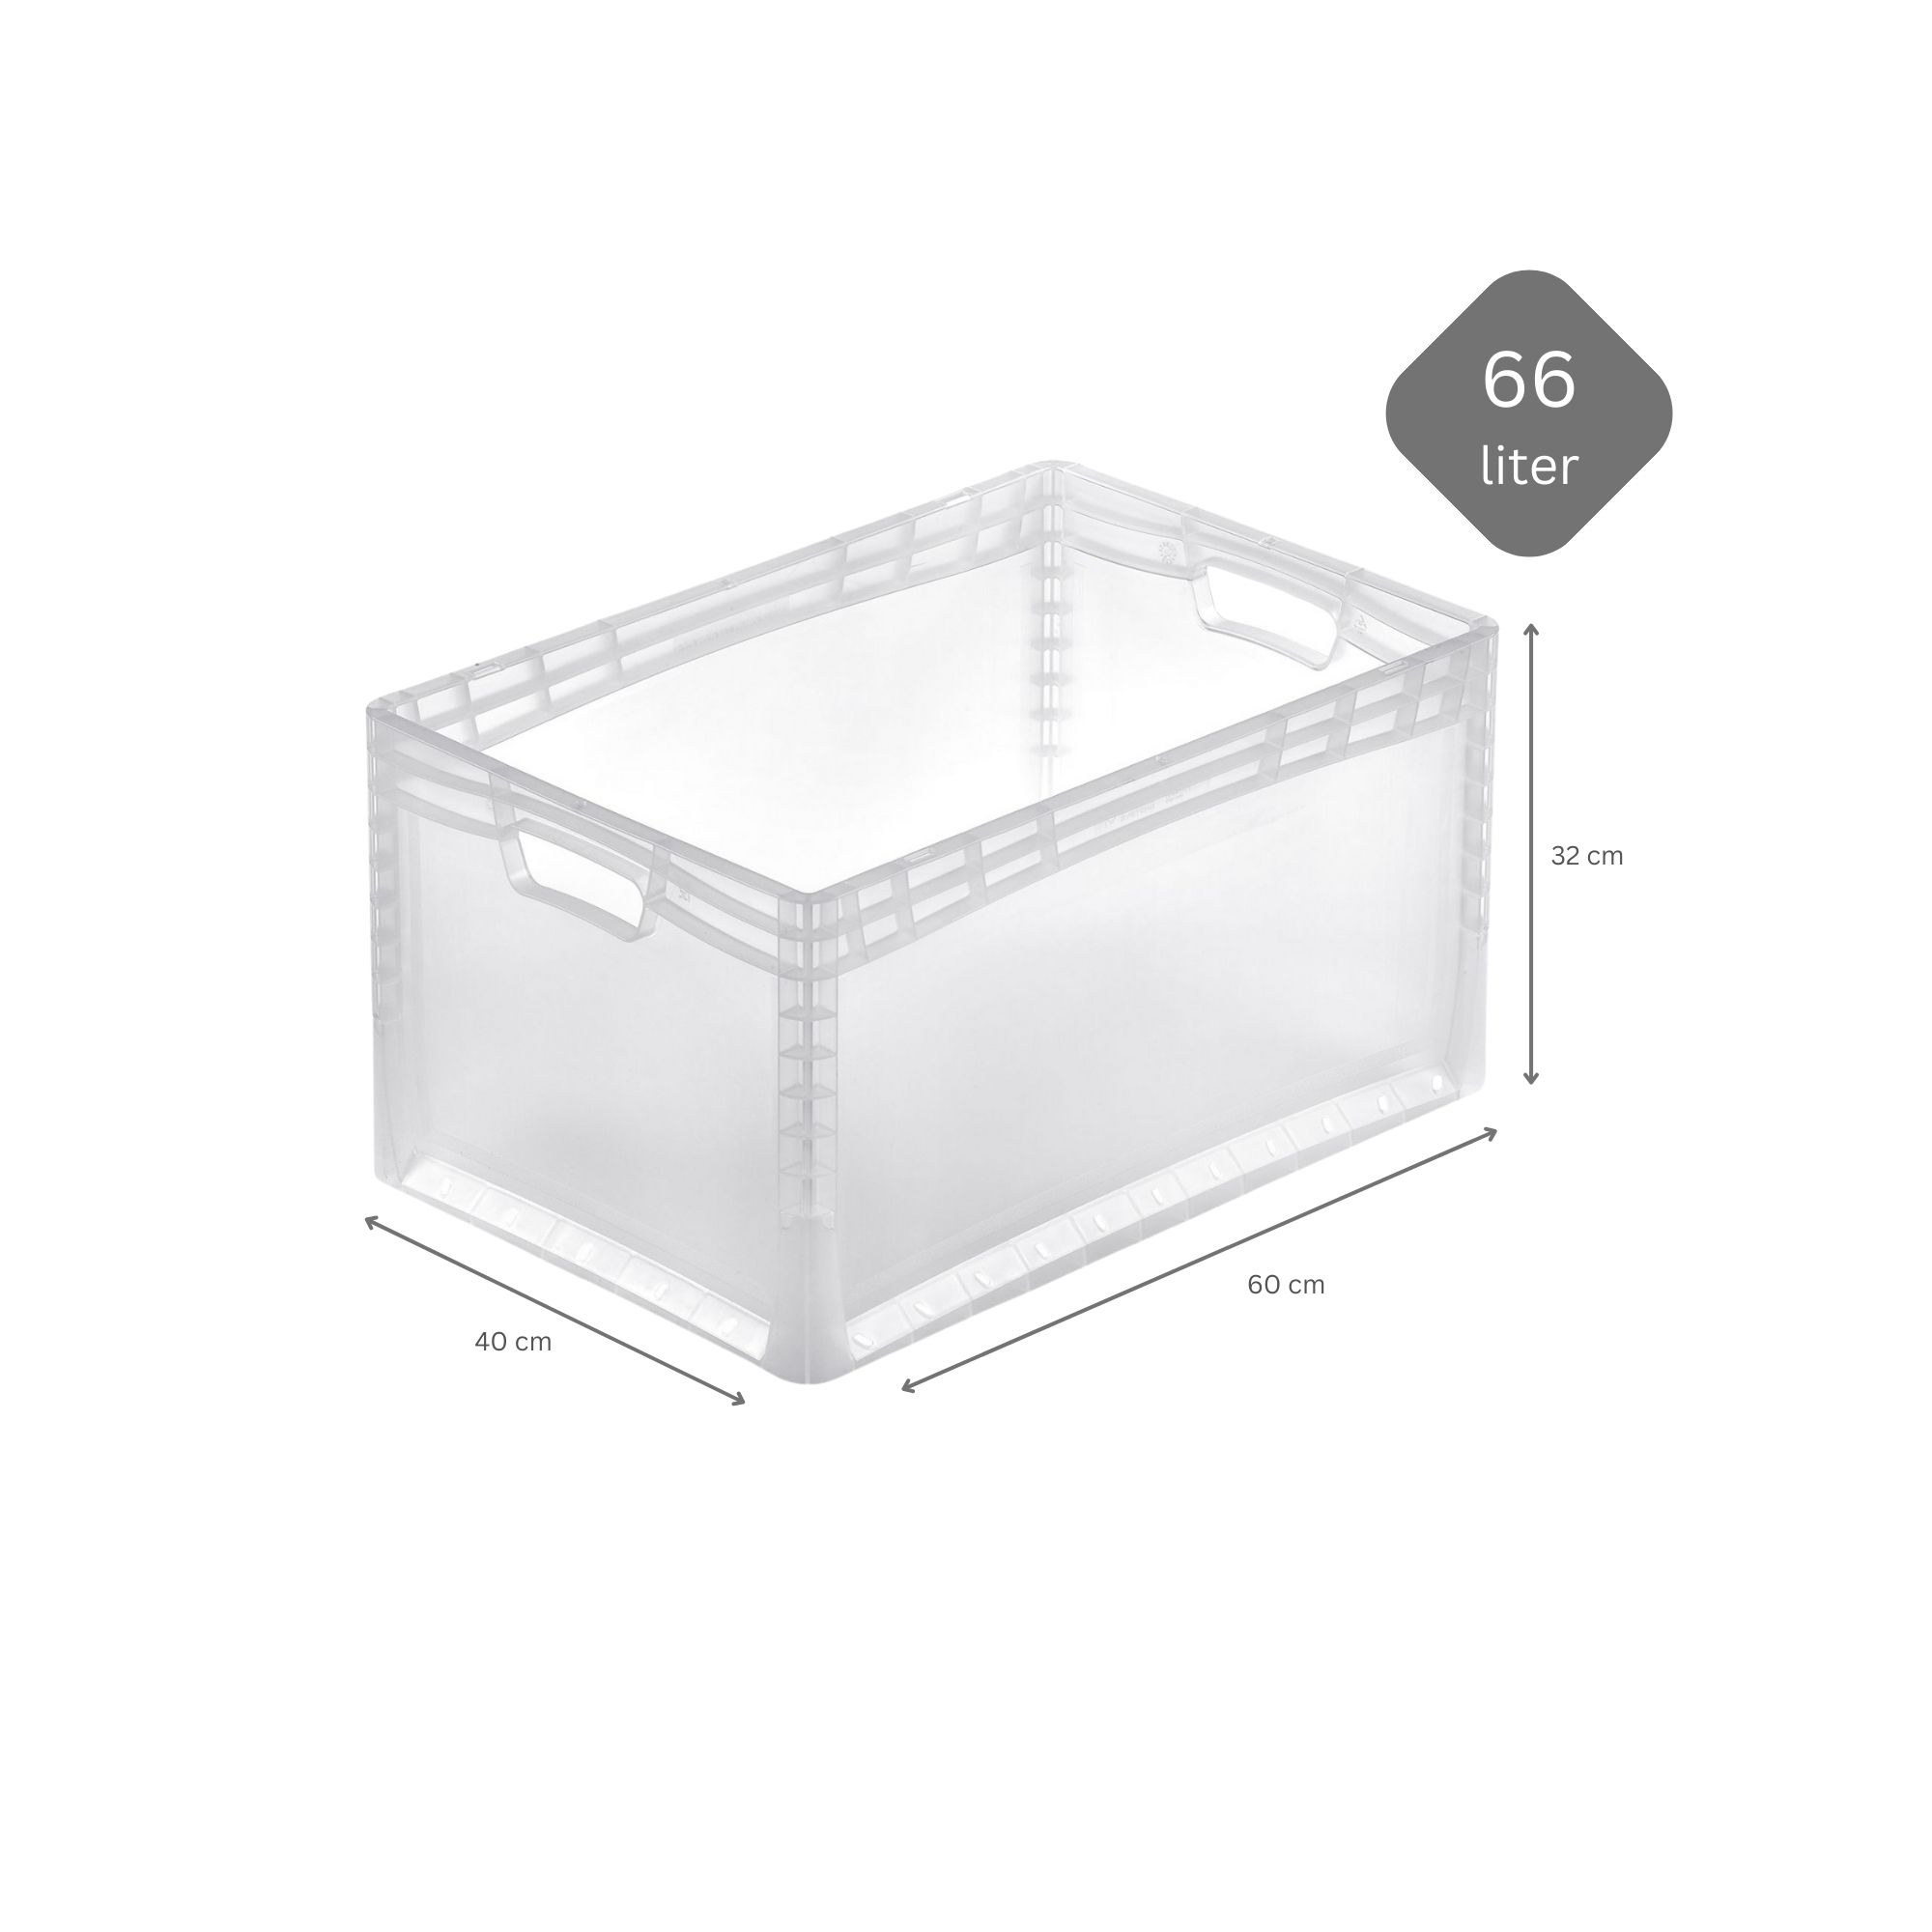 Transparenter Eurobehälter LightLine mit offenem Griff | HxBxT 32x40x60cm | 66 Liter | Eurobox, Transportbox, Transportbehälter, Stapelbehälter